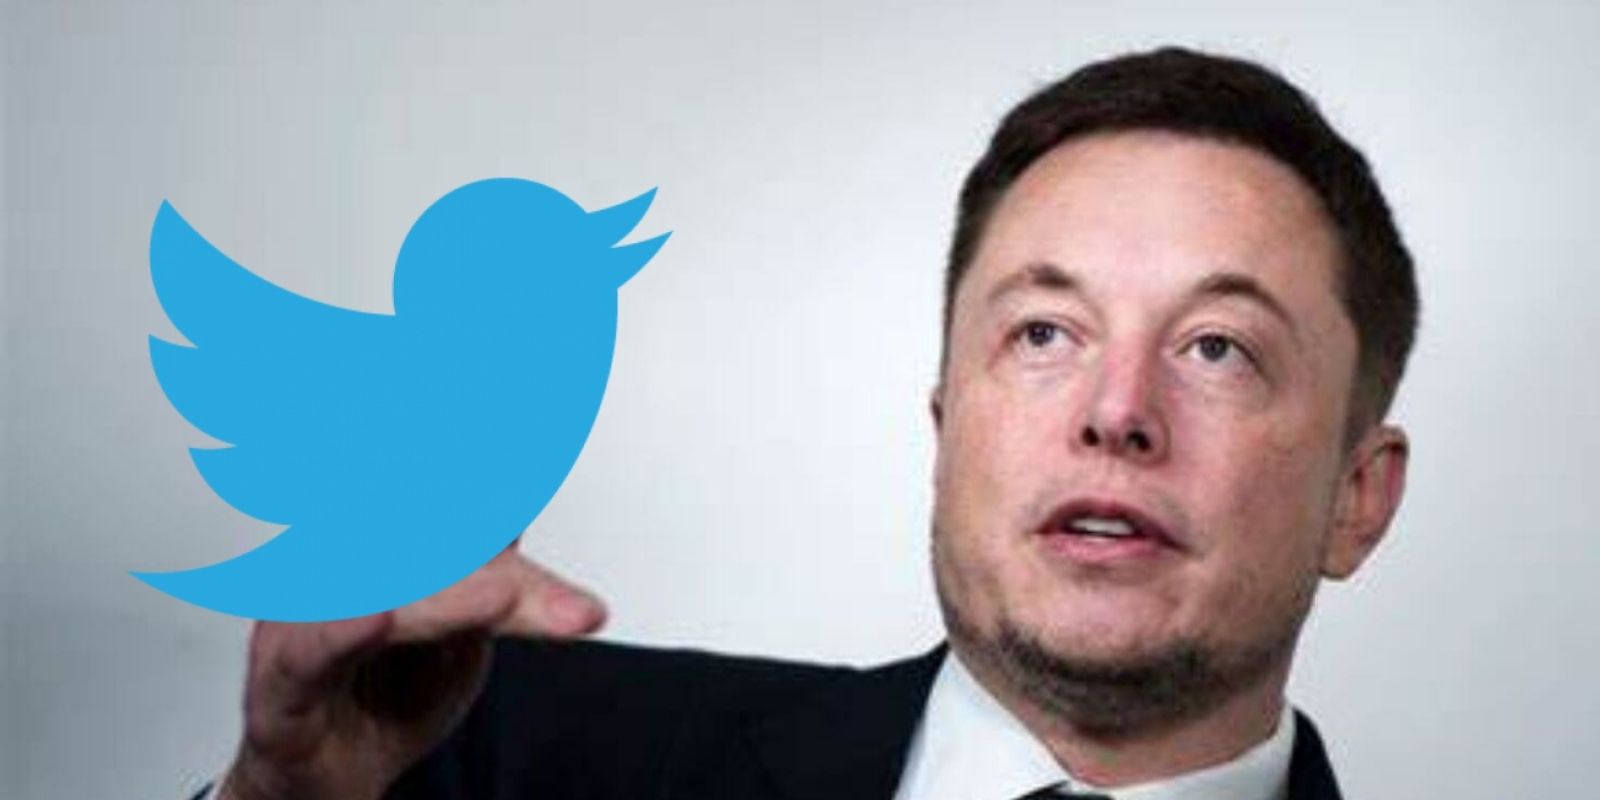 BREAKING: Elon Musk makes $43 billion offer to buy Twitter